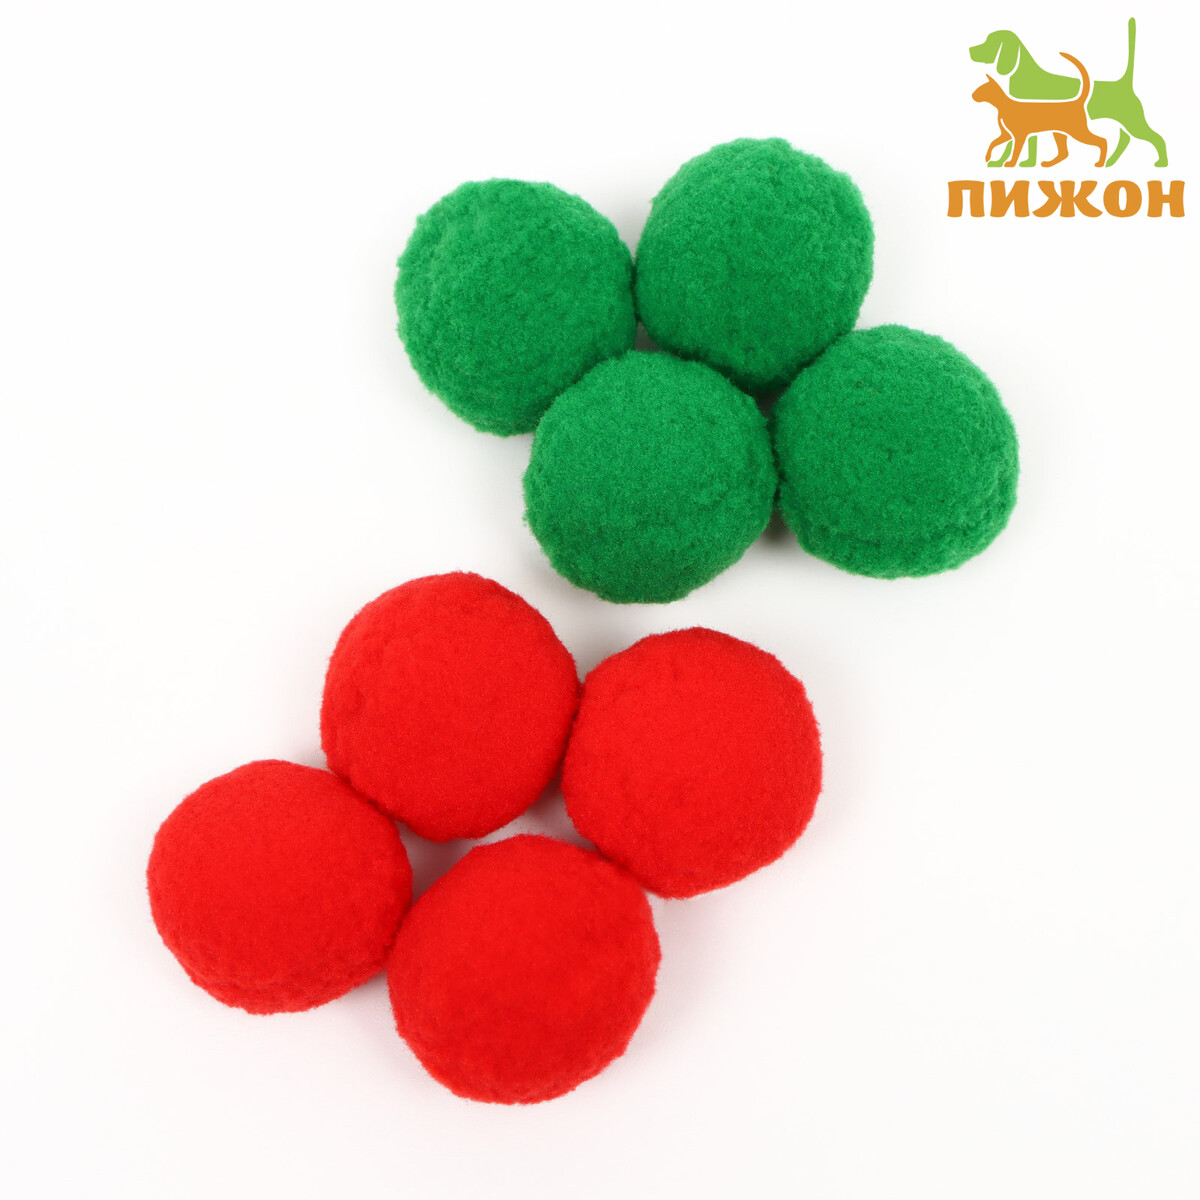 Набор плюшевых шариков для кошек, 8 шт, зеленый/красный набор шариков для аквамозаики